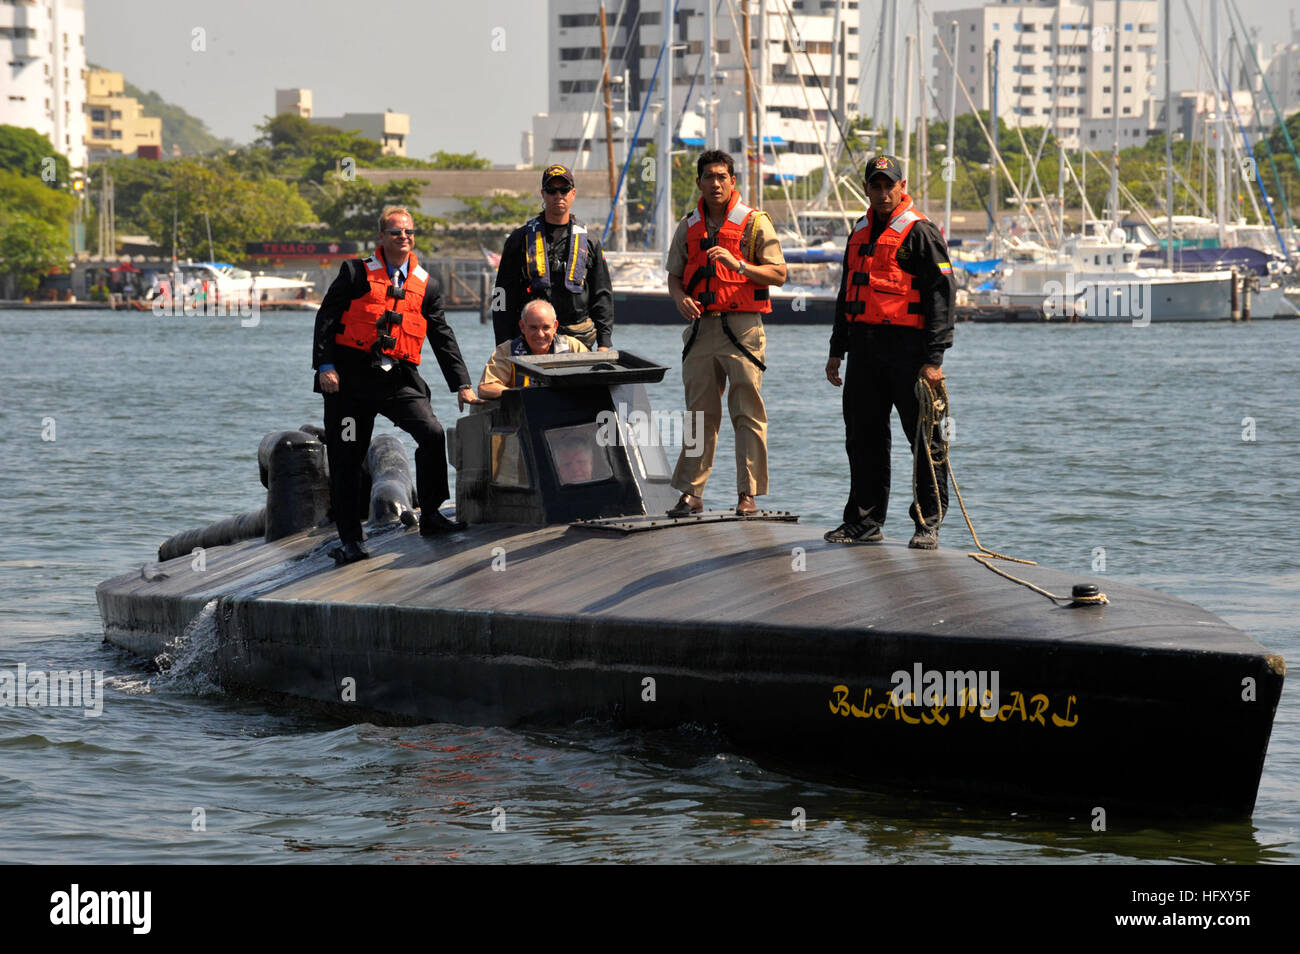 091205-N-8273J-220 CARTAGENA, Kolumbien (5. Dezember 2009) Chief of Naval Operations (CNO) Admiral Gary Roughead treibt ein semi-submersible Boot beim Treffen mit kolumbianischen Streitkräfte der Küstenwache im Naval Base Bolivar. Das Boot wurde von Drogenschmugglern in der Karibik beschlagnahmt. (Foto: U.S. Navy Mass Communication Specialist 1. Klasse Tiffini Jones Vanderwyst/freigegeben) U.S. Navy 091205-N-8273J-220 Chief of Naval Operations (CNO) Admiral Gary Roughead treibt ein semi-submersible Boot beim Treffen mit kolumbianischen Streitkräfte der Küstenwache im Naval Base Bolivar Stockfoto